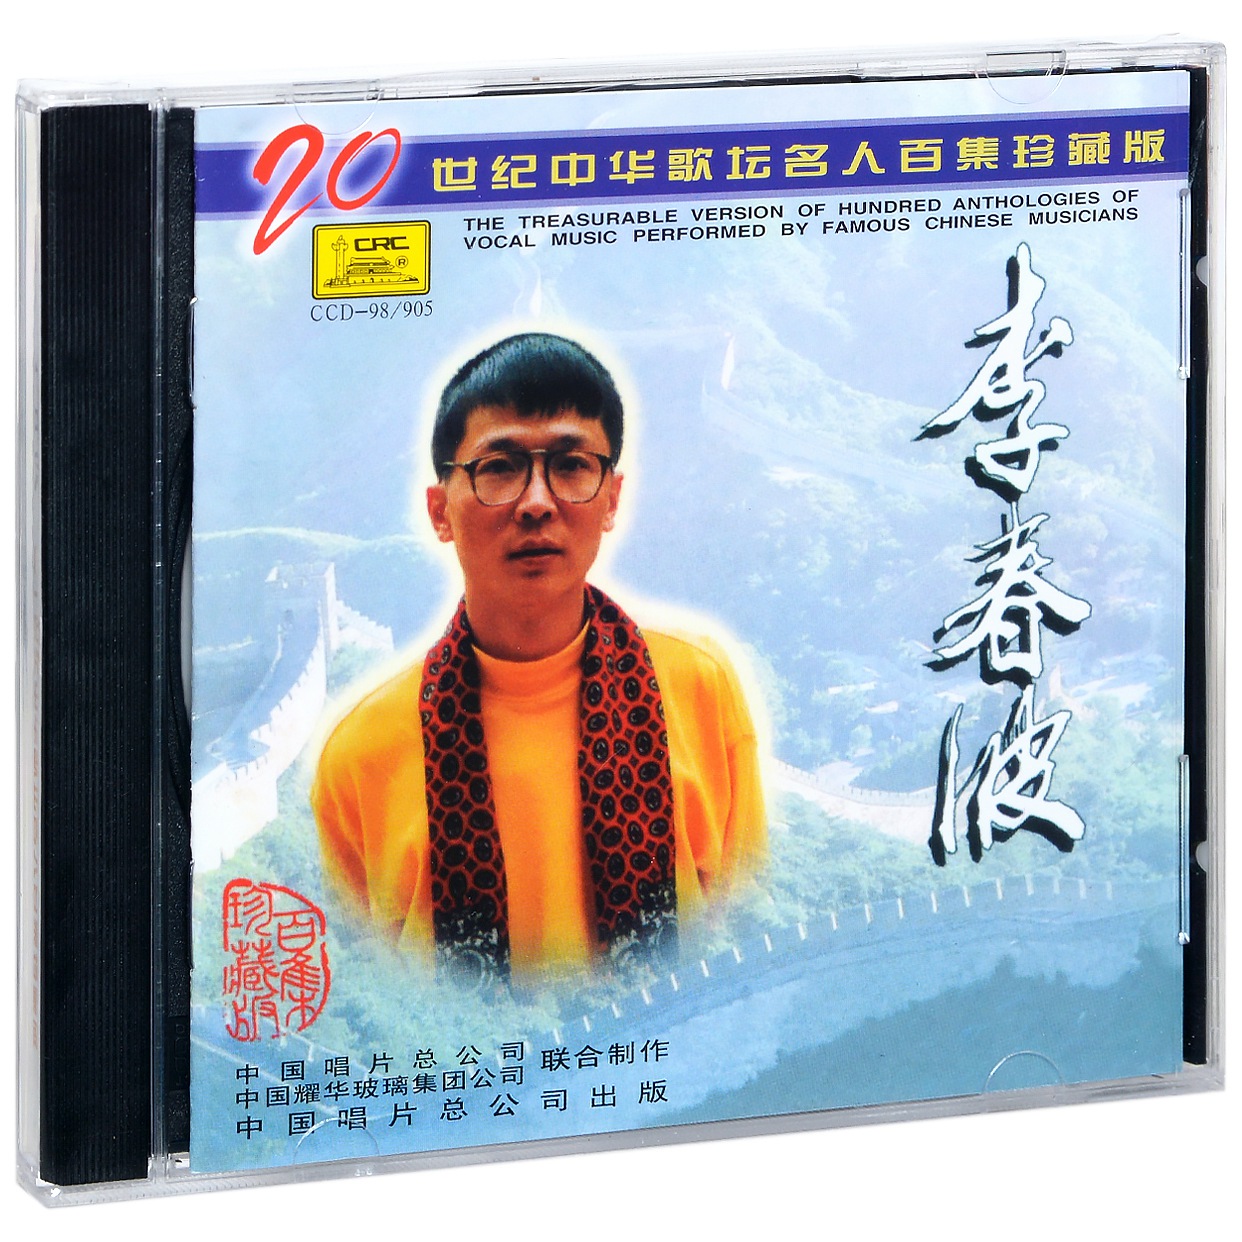 正版李春波 20世纪中华歌坛名人百集珍藏版 唱片CD碟片